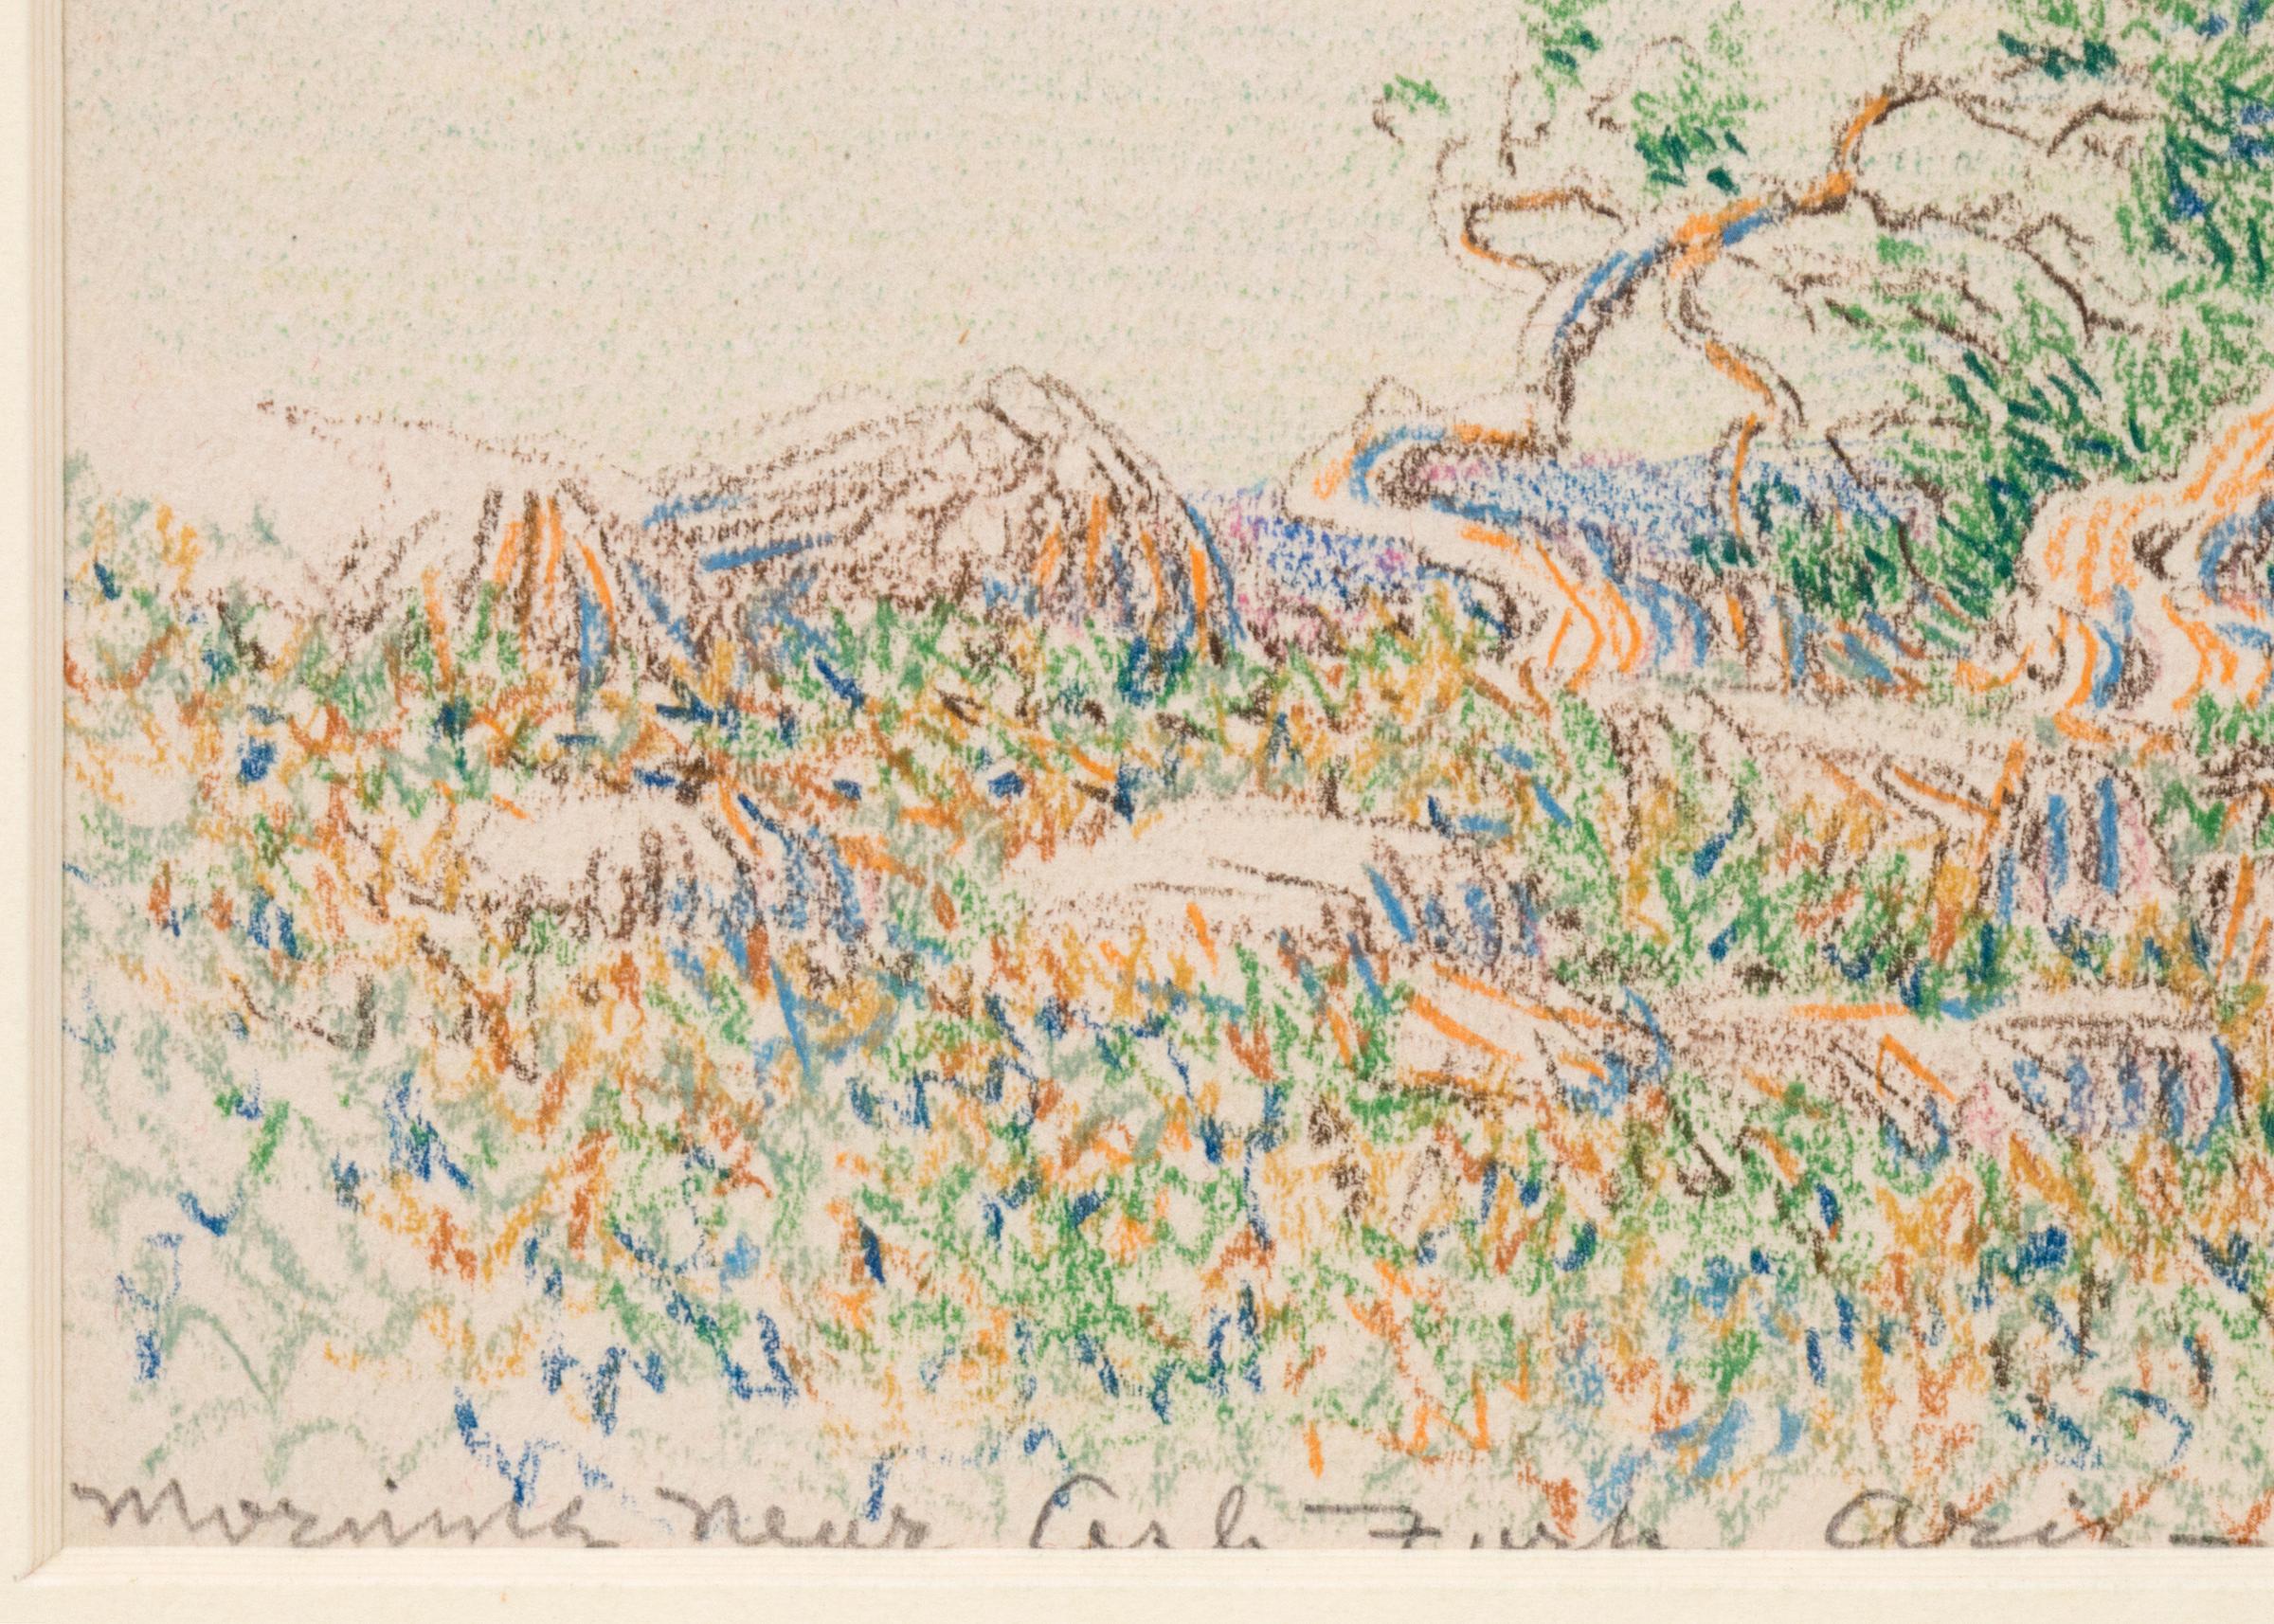 Morning Near Arizona, (Desert Landscape) est un dessin original au crayon de couleur réalisé en 1888 par George Elbert Burr (1859-1939). Représentation d'un paysage printanier/estival avec un arbre et une faune, des nuages, un sommet de montagne au